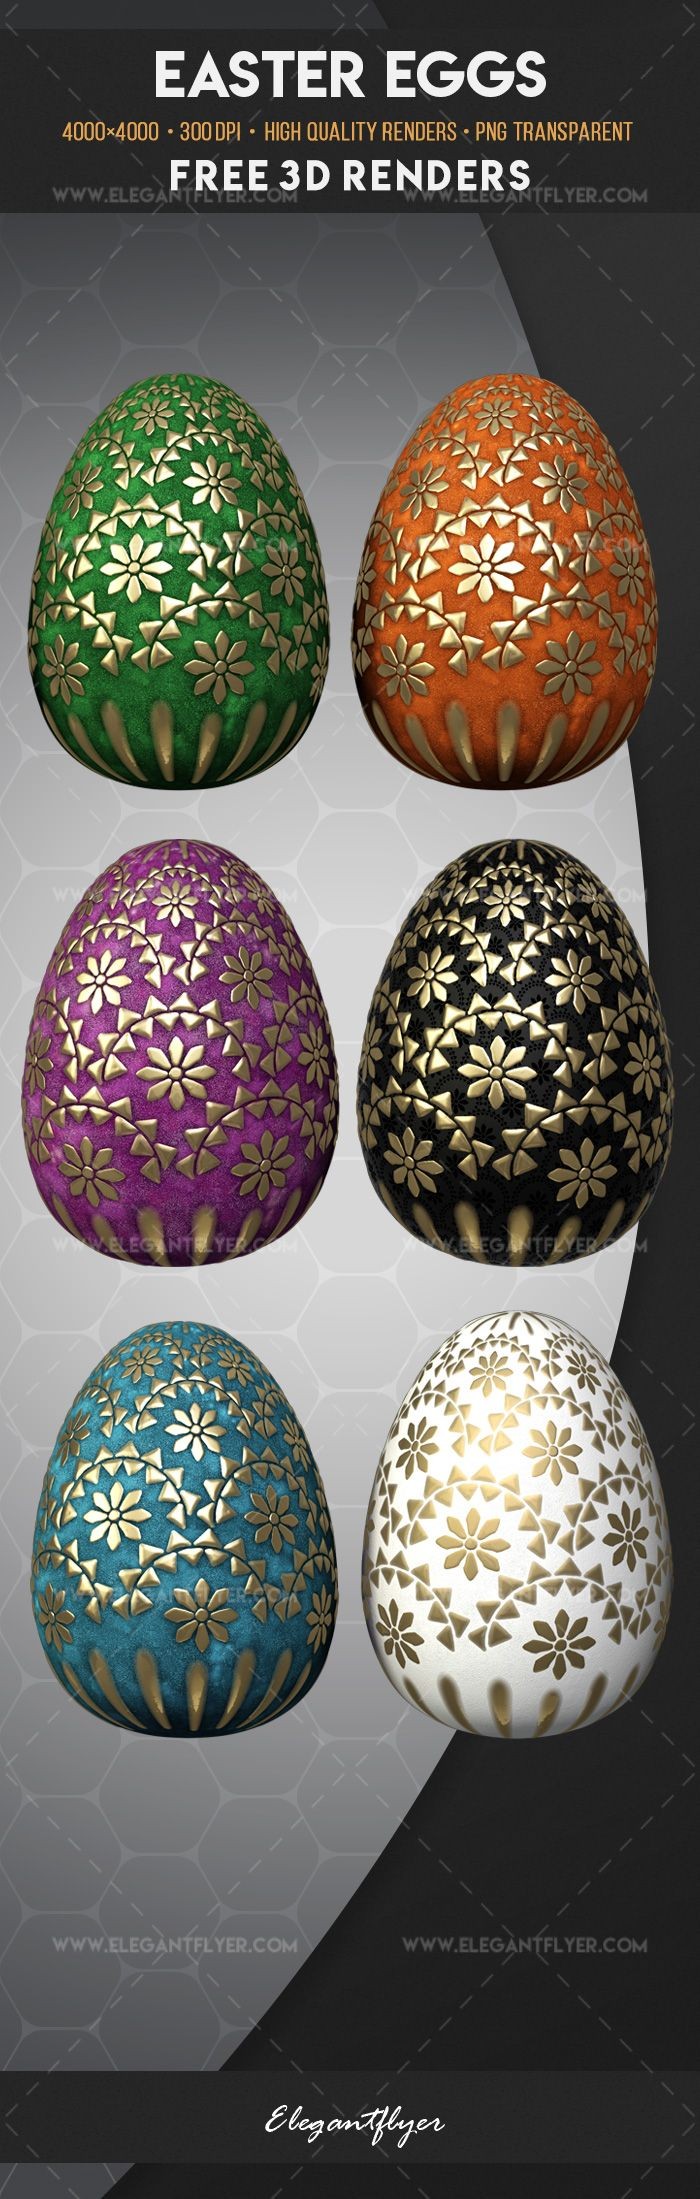 Easter Eggs by ElegantFlyer